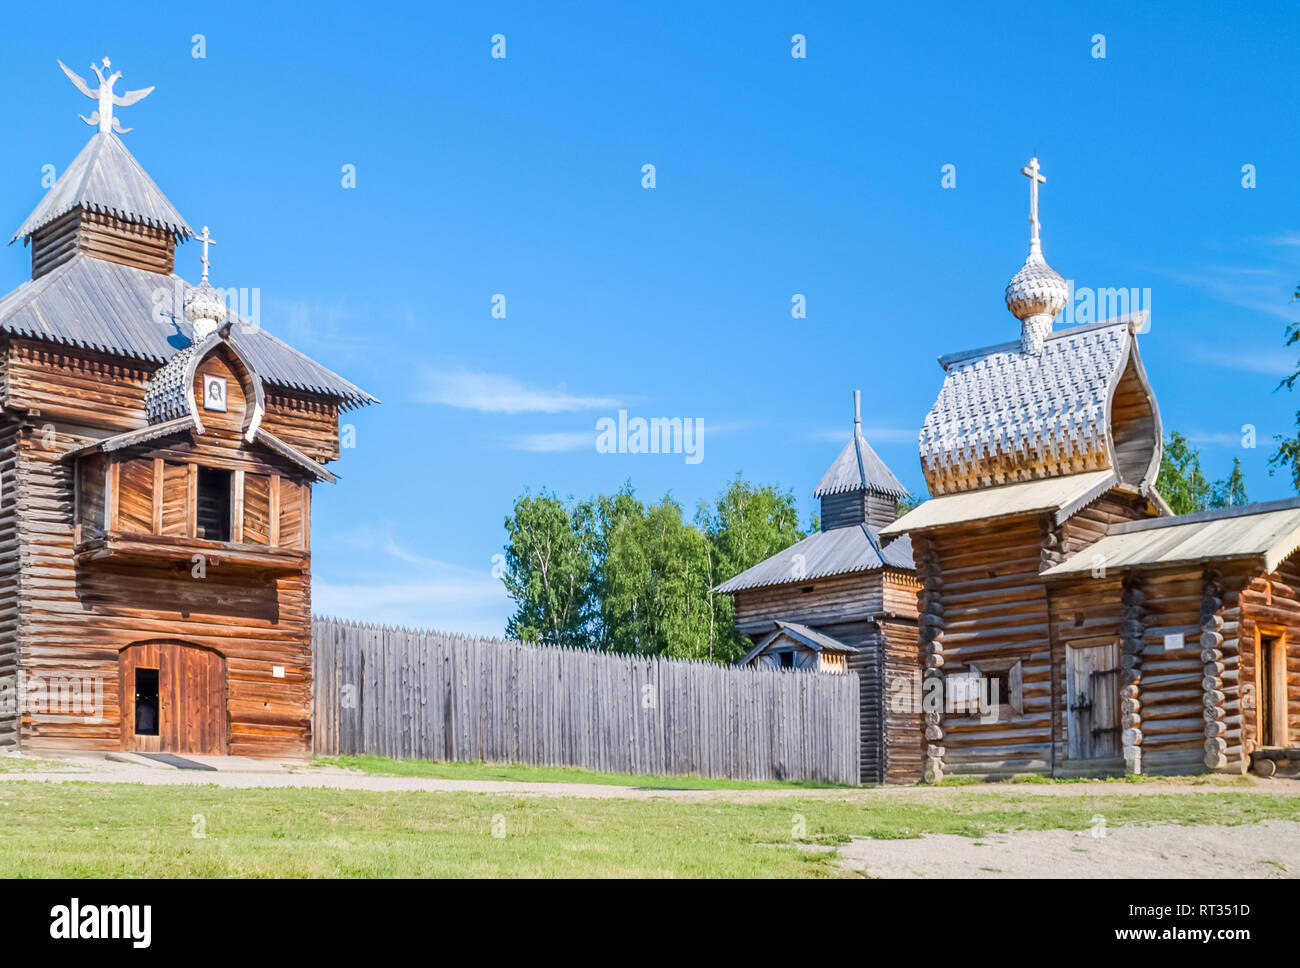 Taltsy est un musée ethnographique d'architecture et d'architecture en bois de Sibérie. Banque D'Images